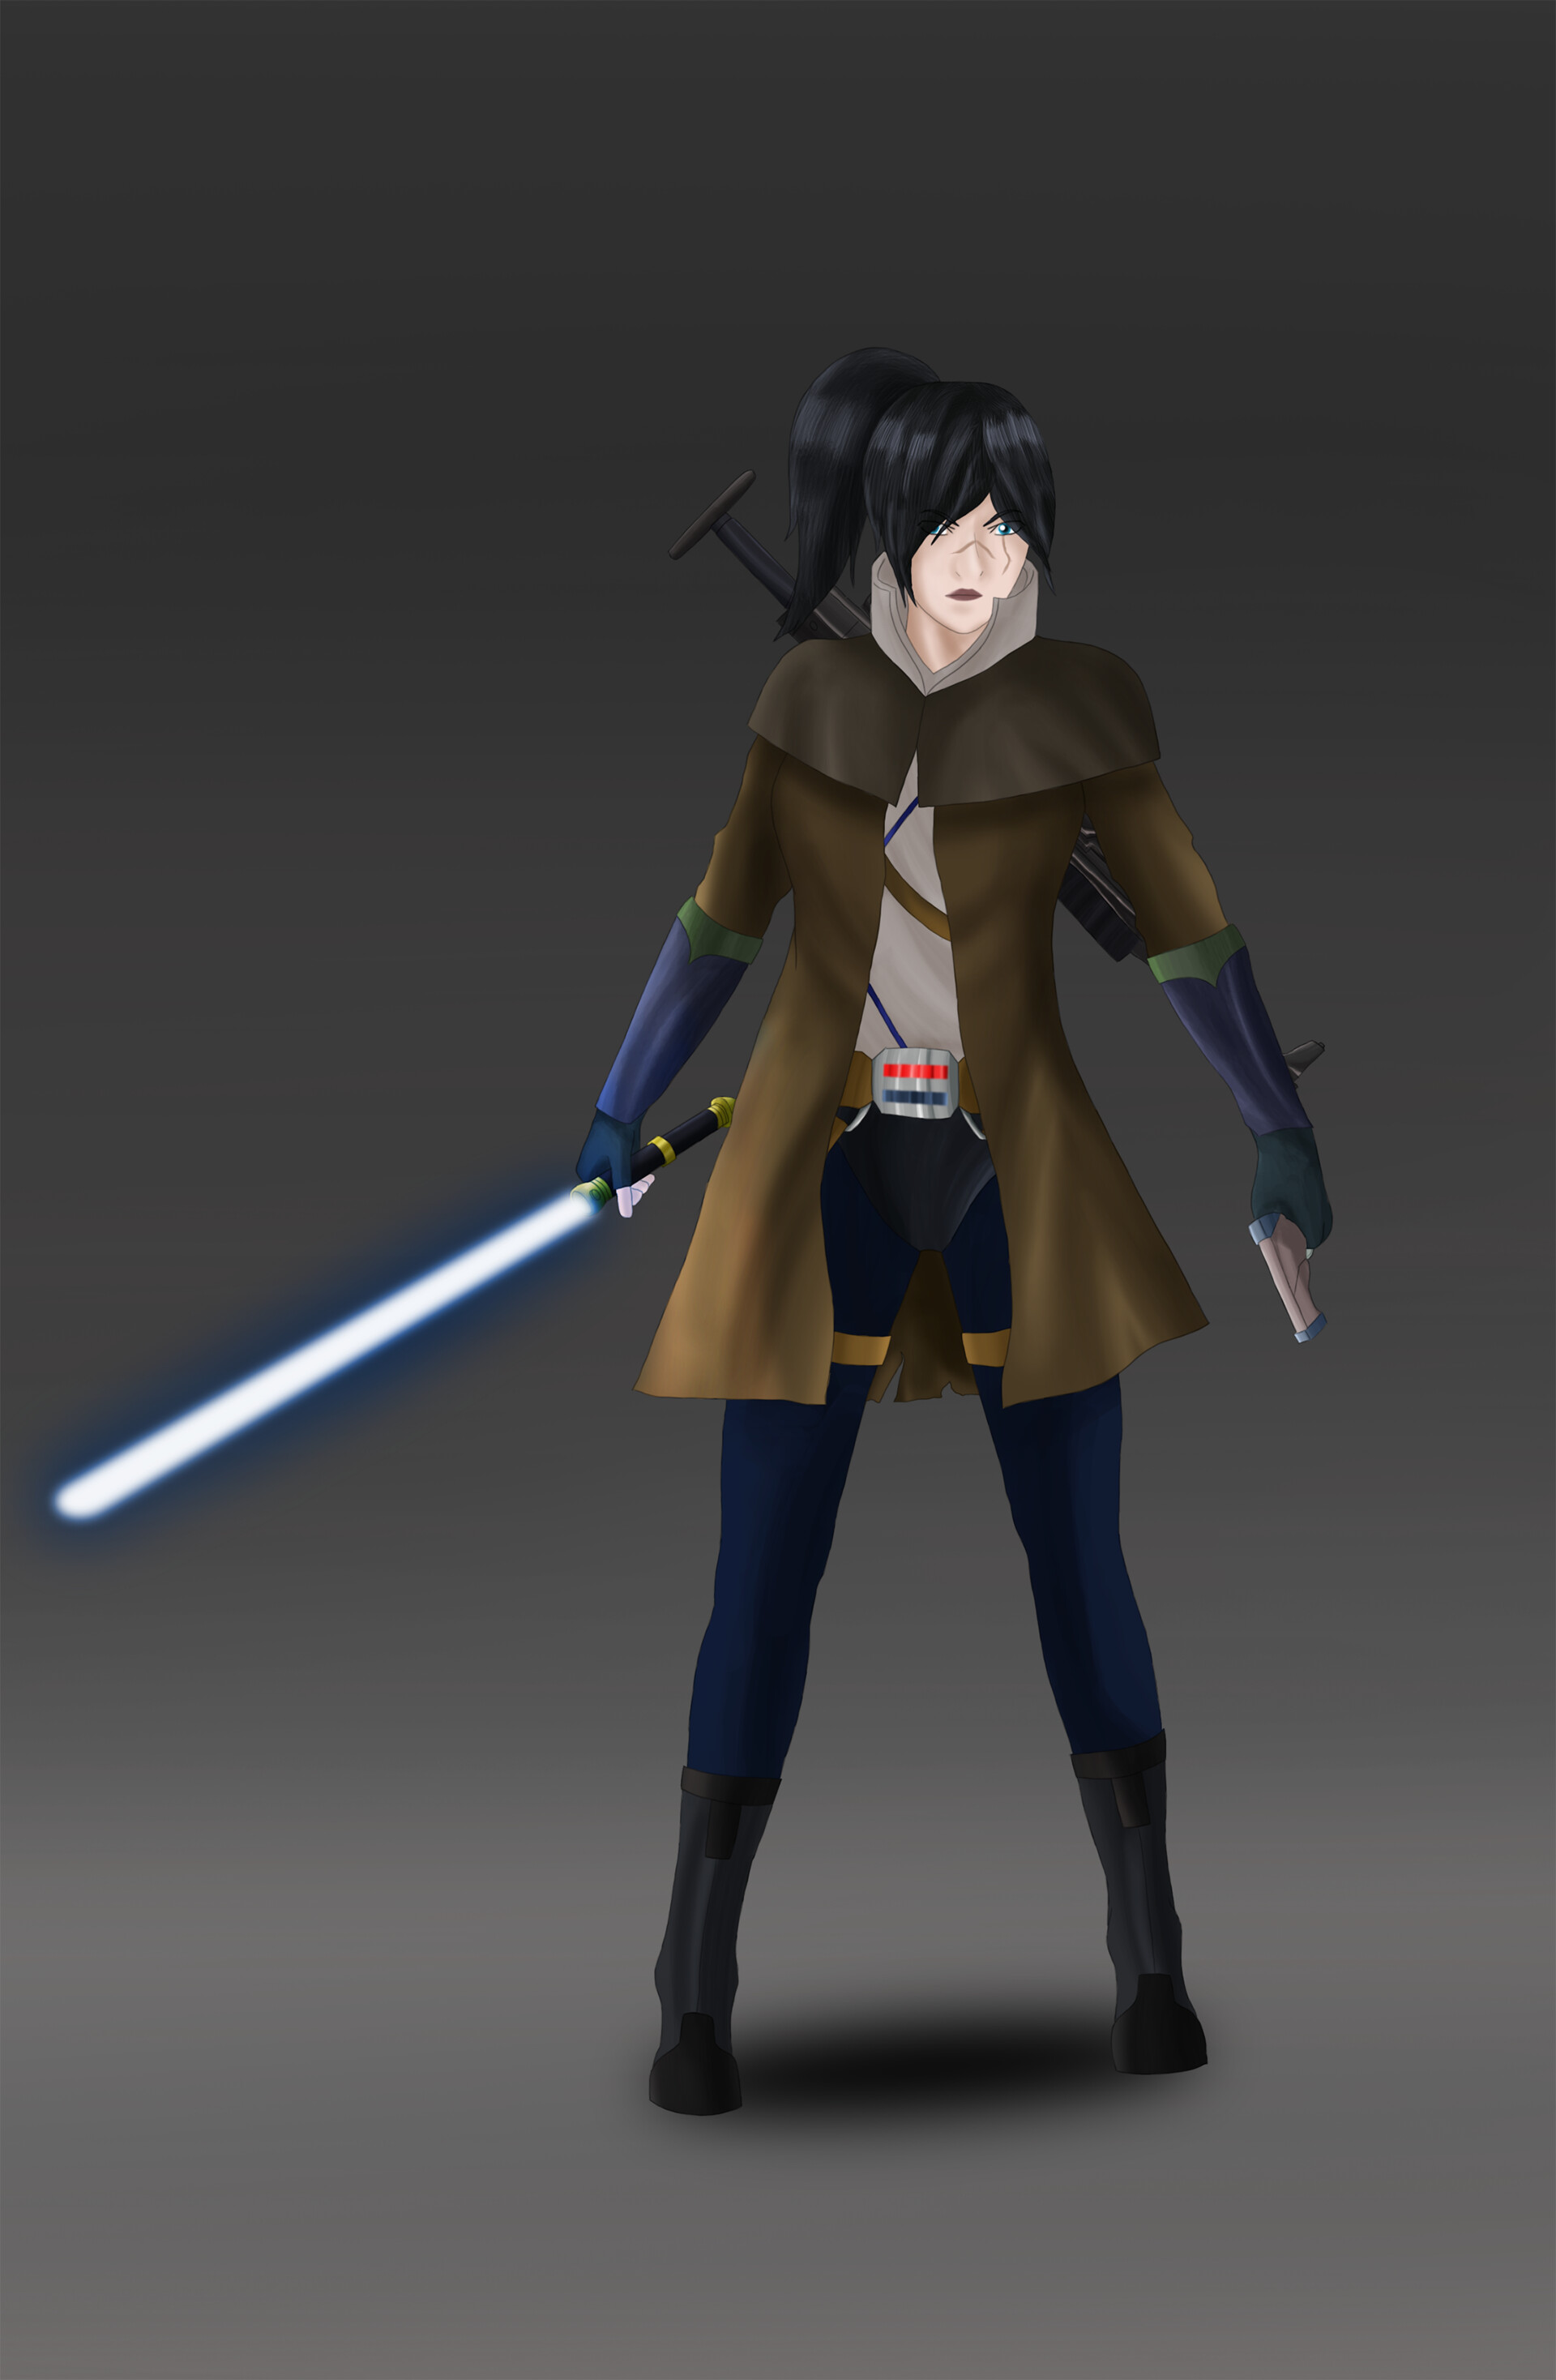 ArtStation - Female Jedi Character Design